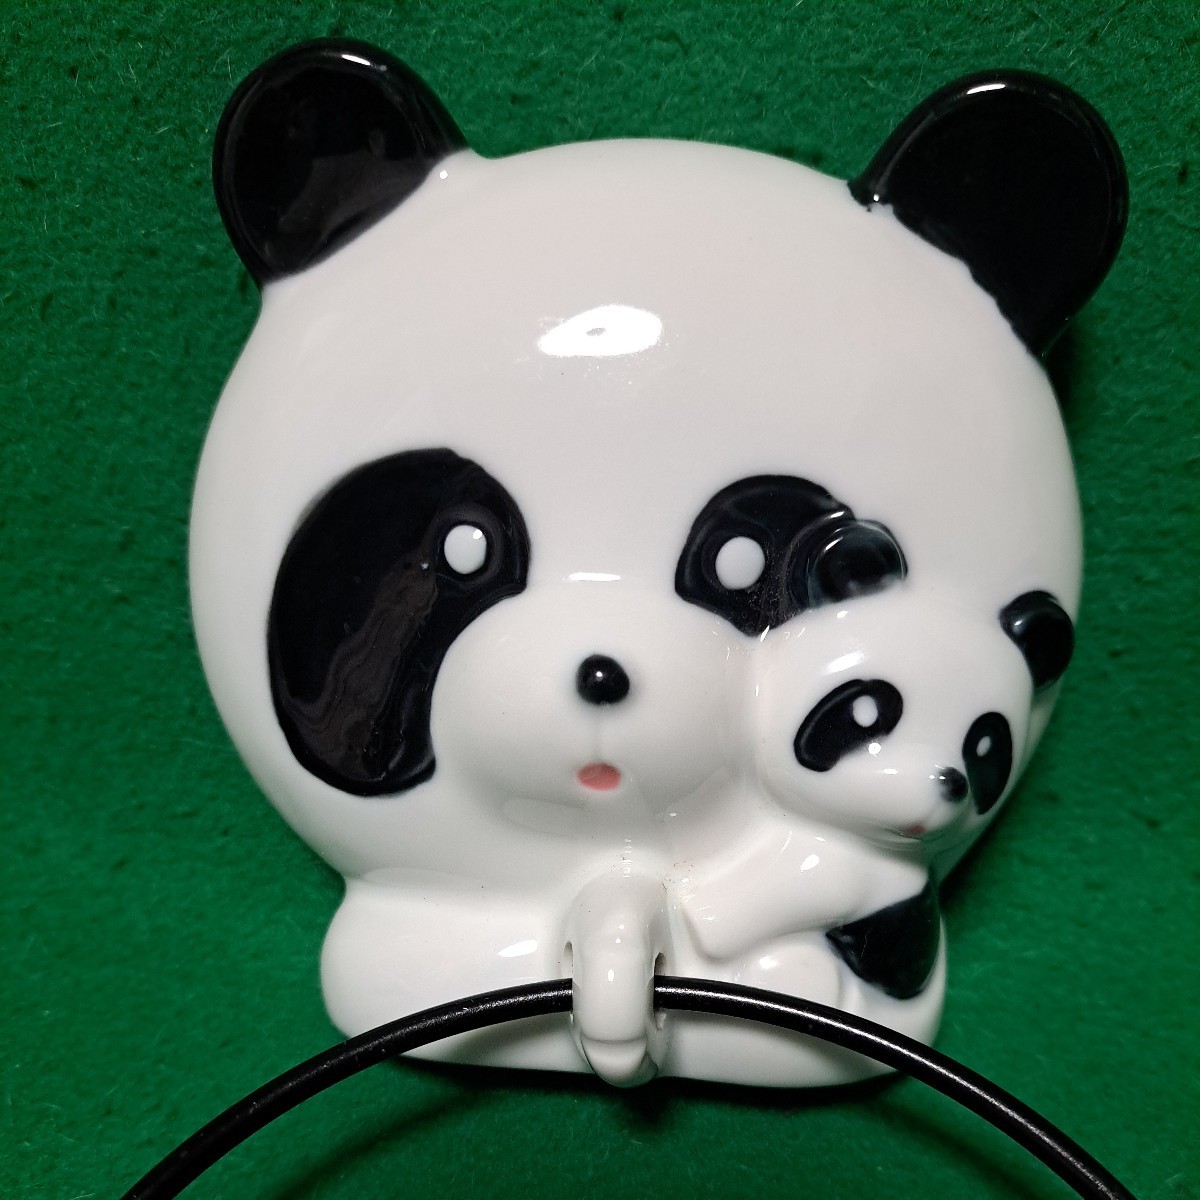  редкость прекрасный товар родители . Panda полотенце вешалка керамика производства стоимость доставки 510 иен 